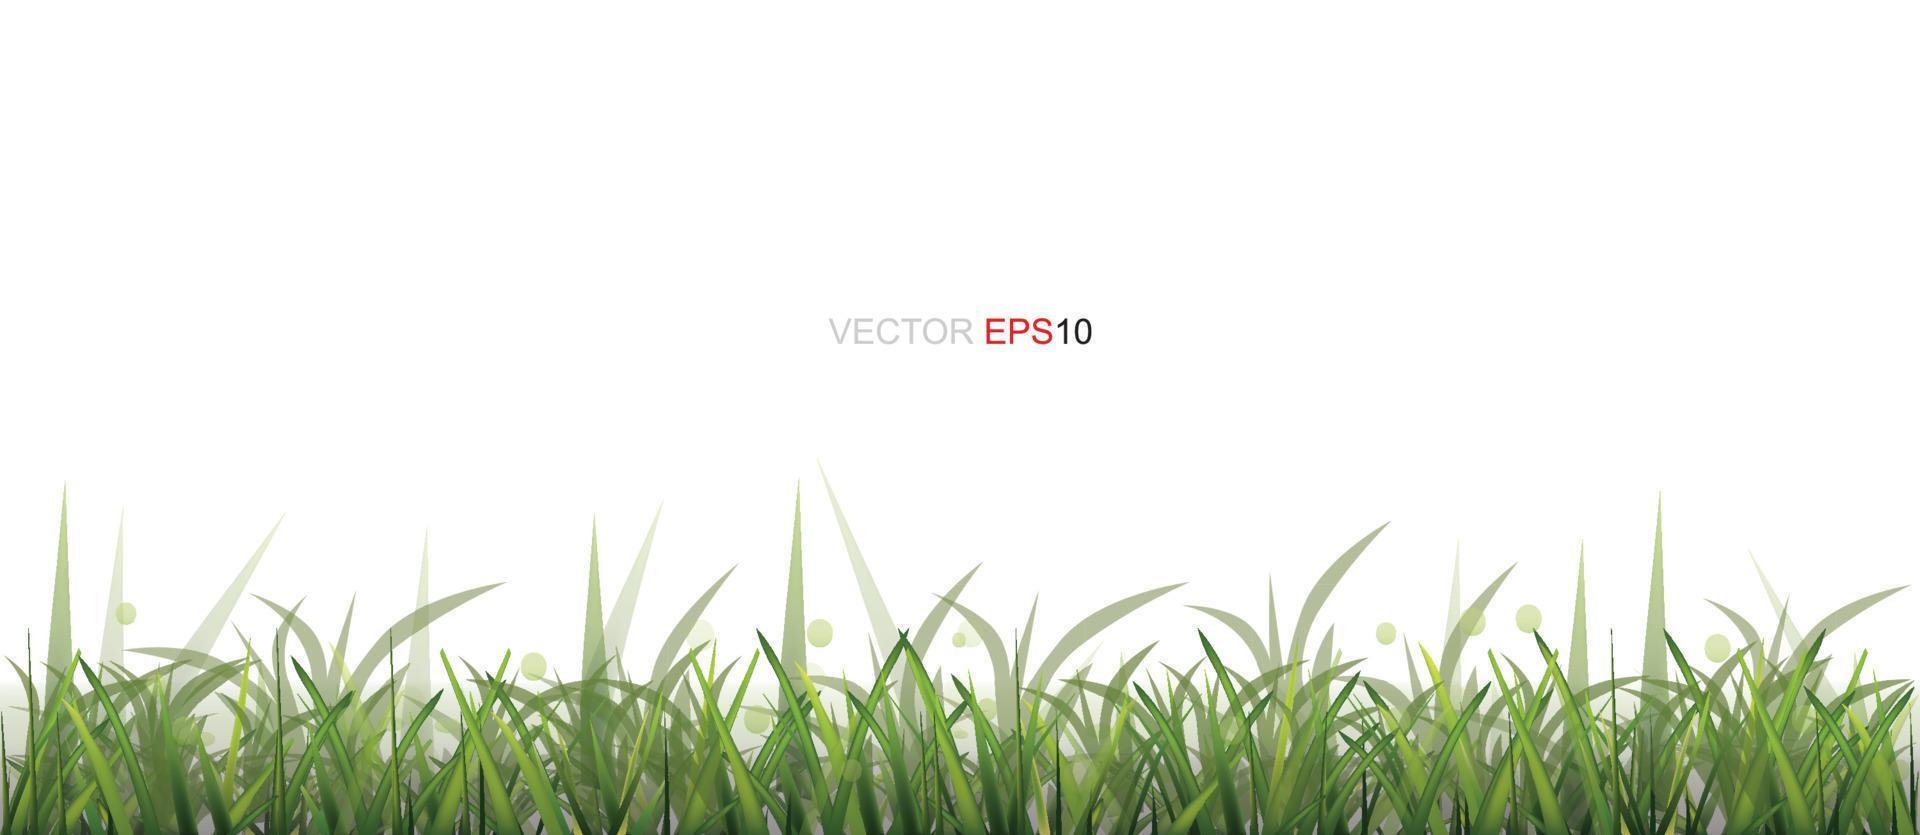 bordure d'herbe verte isolée sur fond blanc avec espace pour copie. vecteur. vecteur